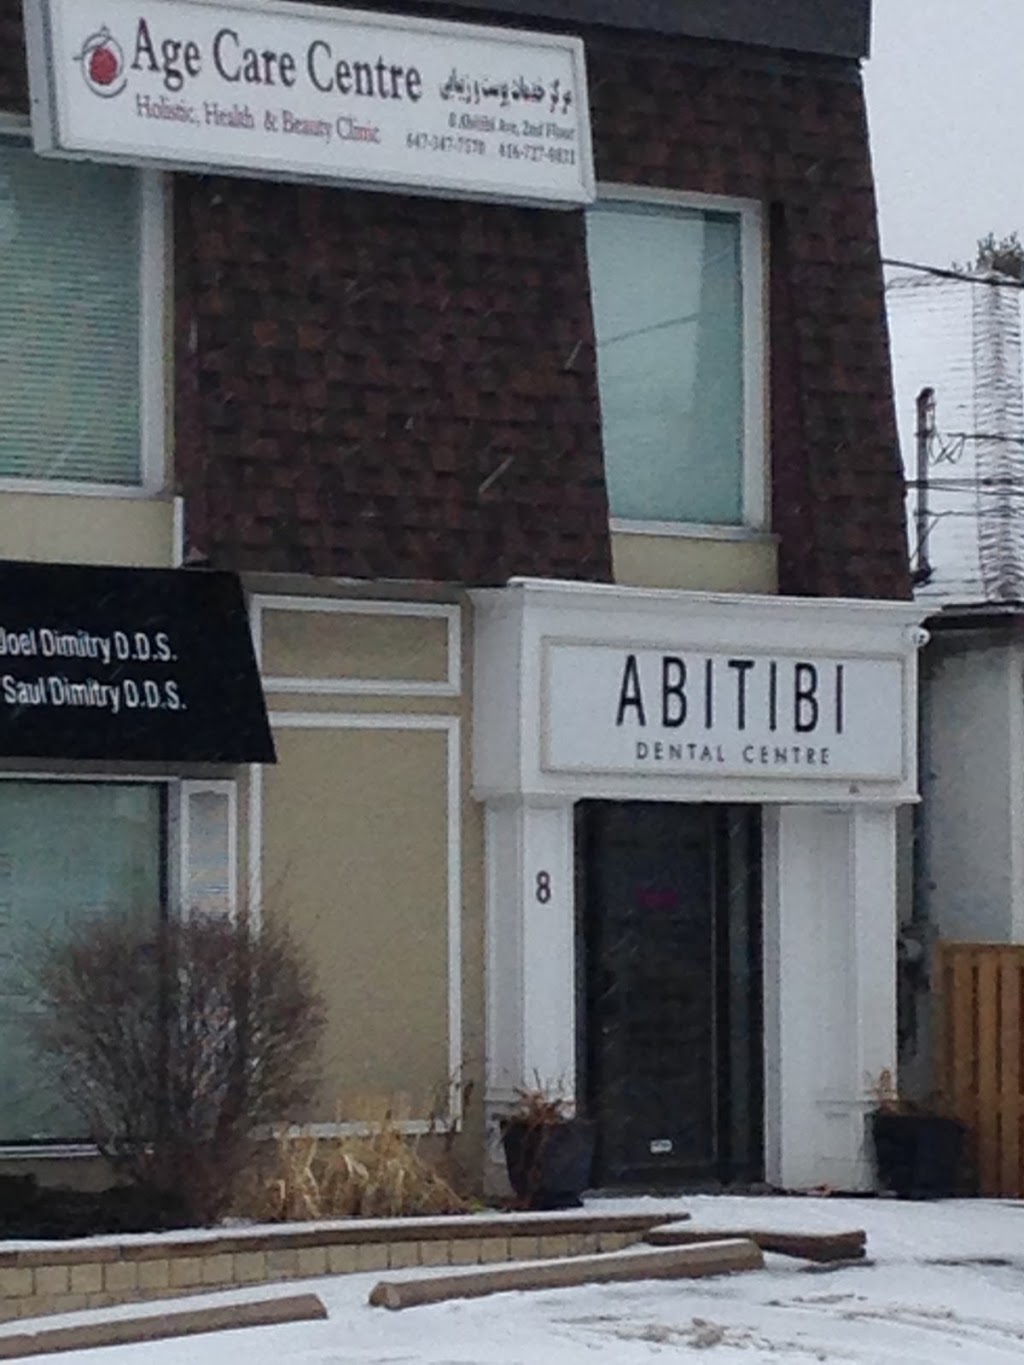 Abitibi Dental Centre | 8 Abitibi Ave, North York, ON M2M 2V1, Canada | Phone: (416) 223-0550